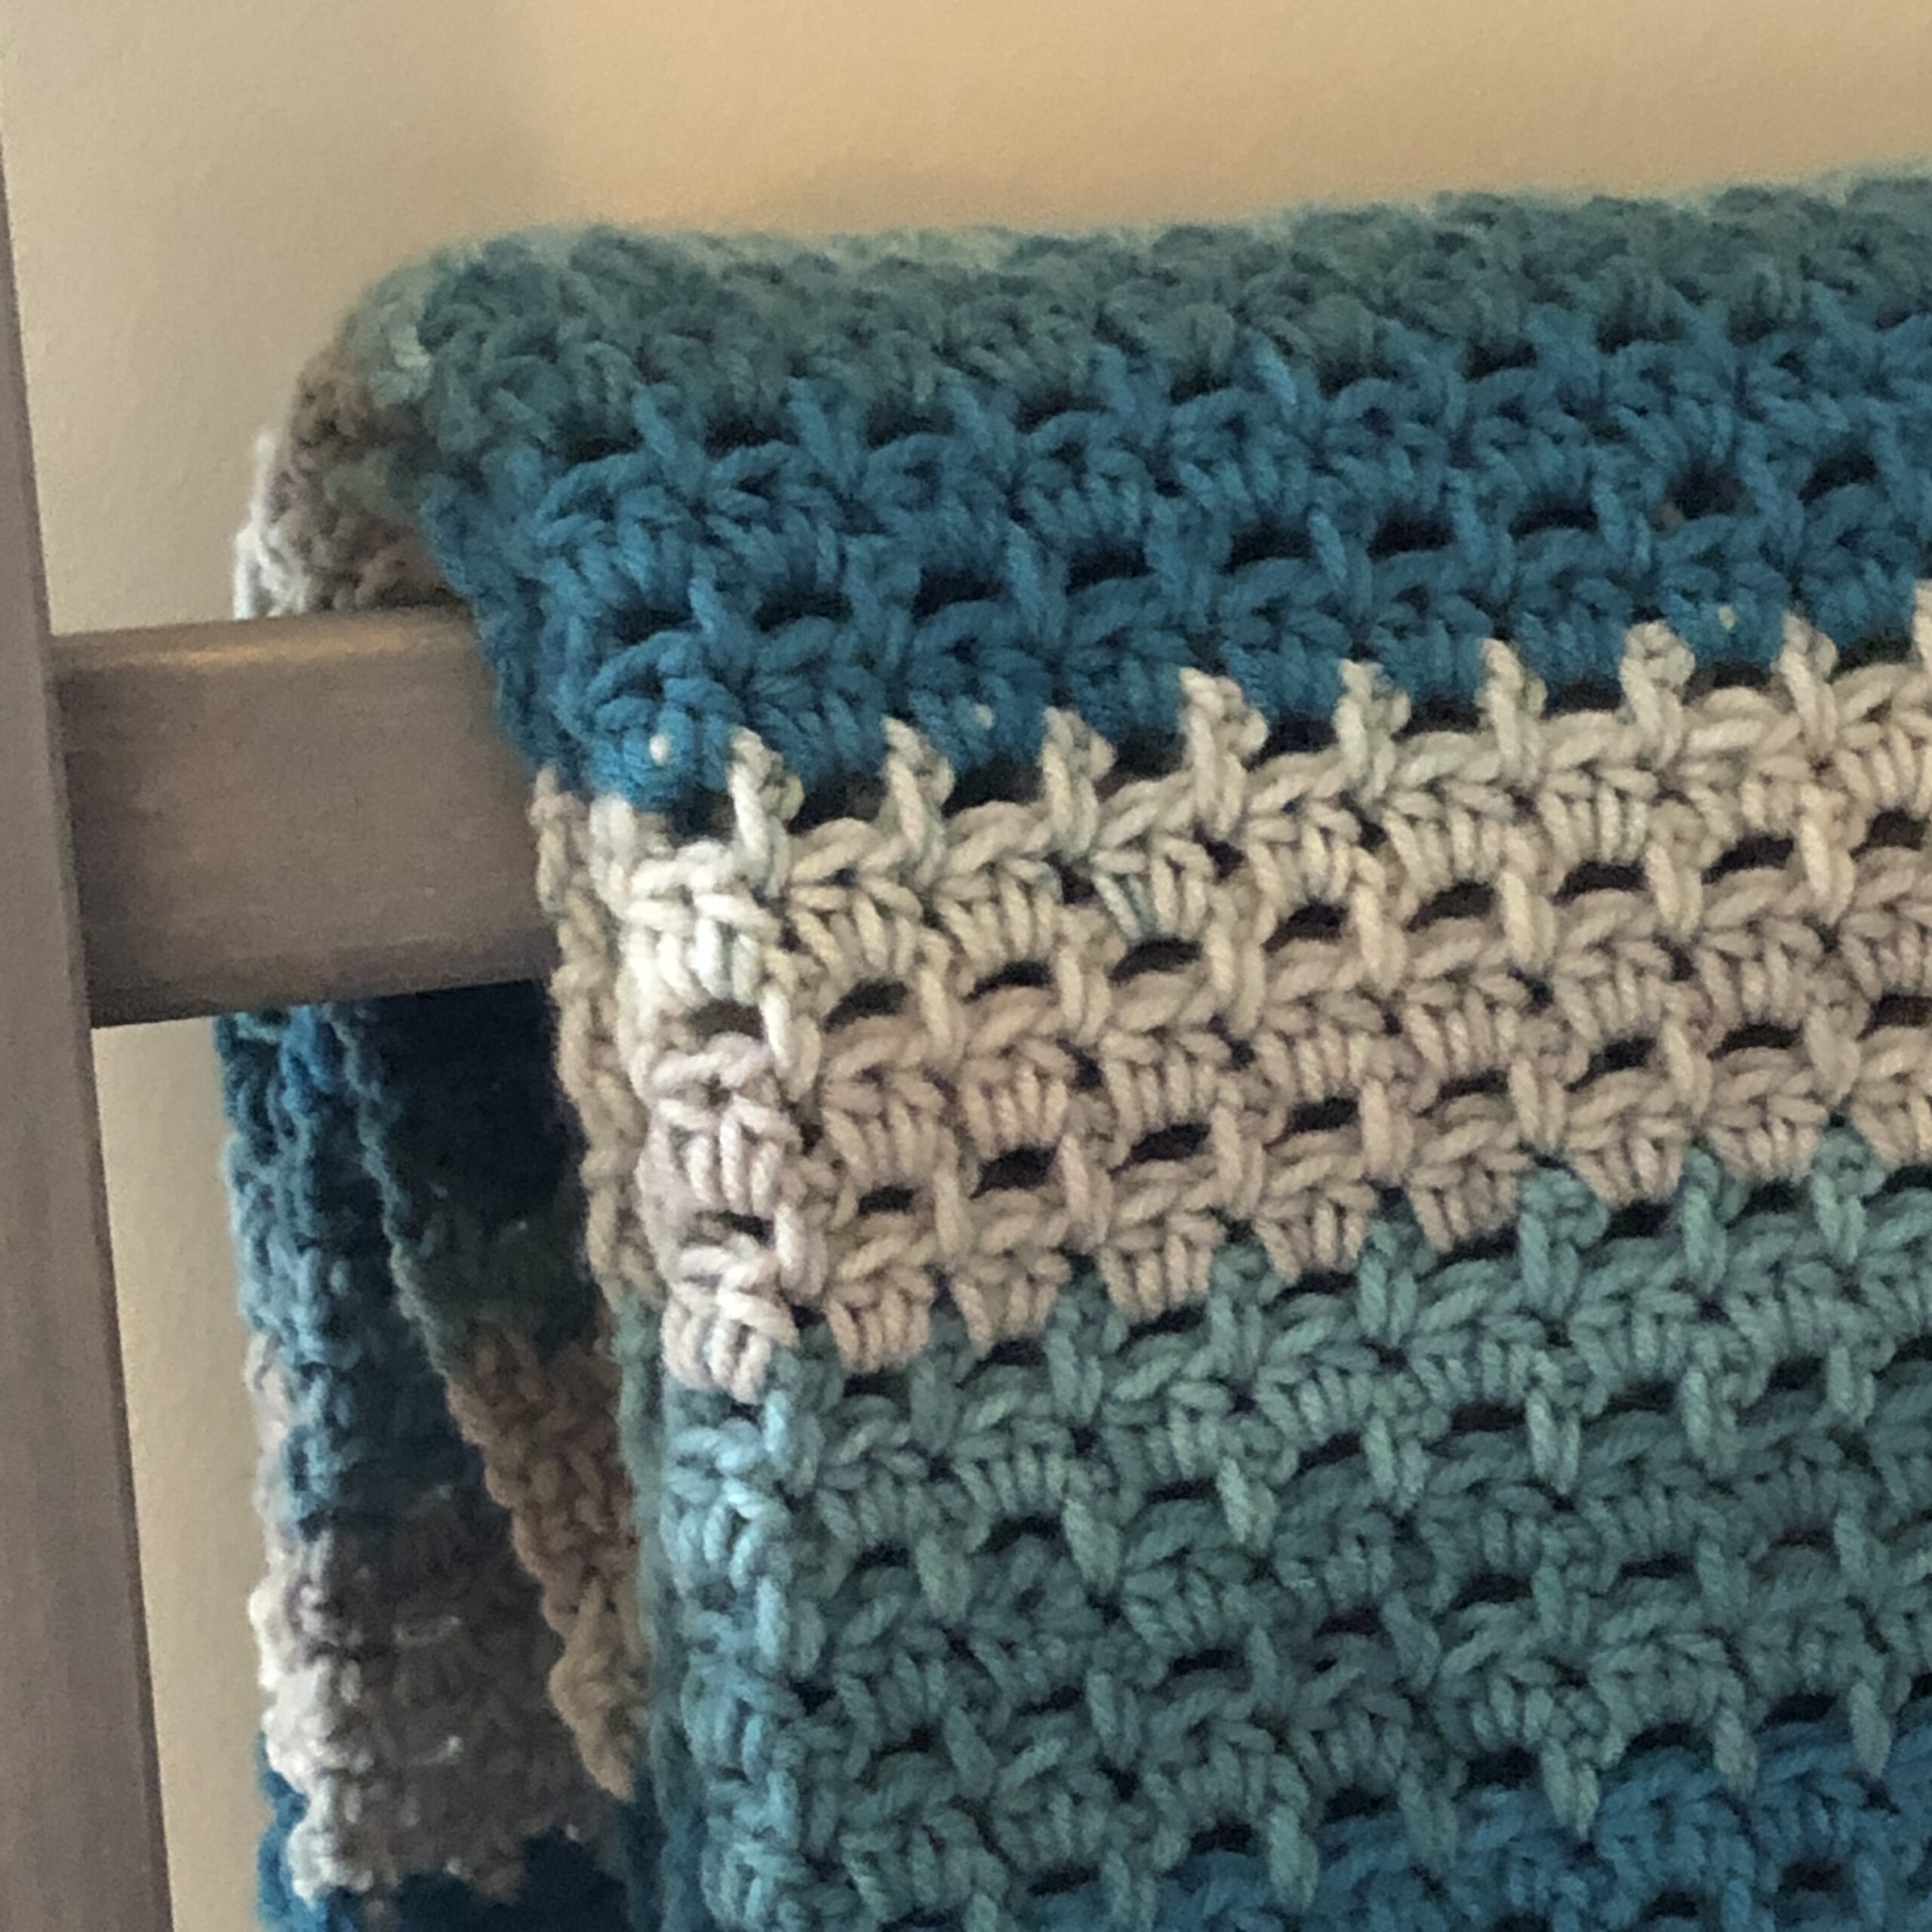 Book Nook Tunisian Throw Crochet Pattern - Ambassador Crochet